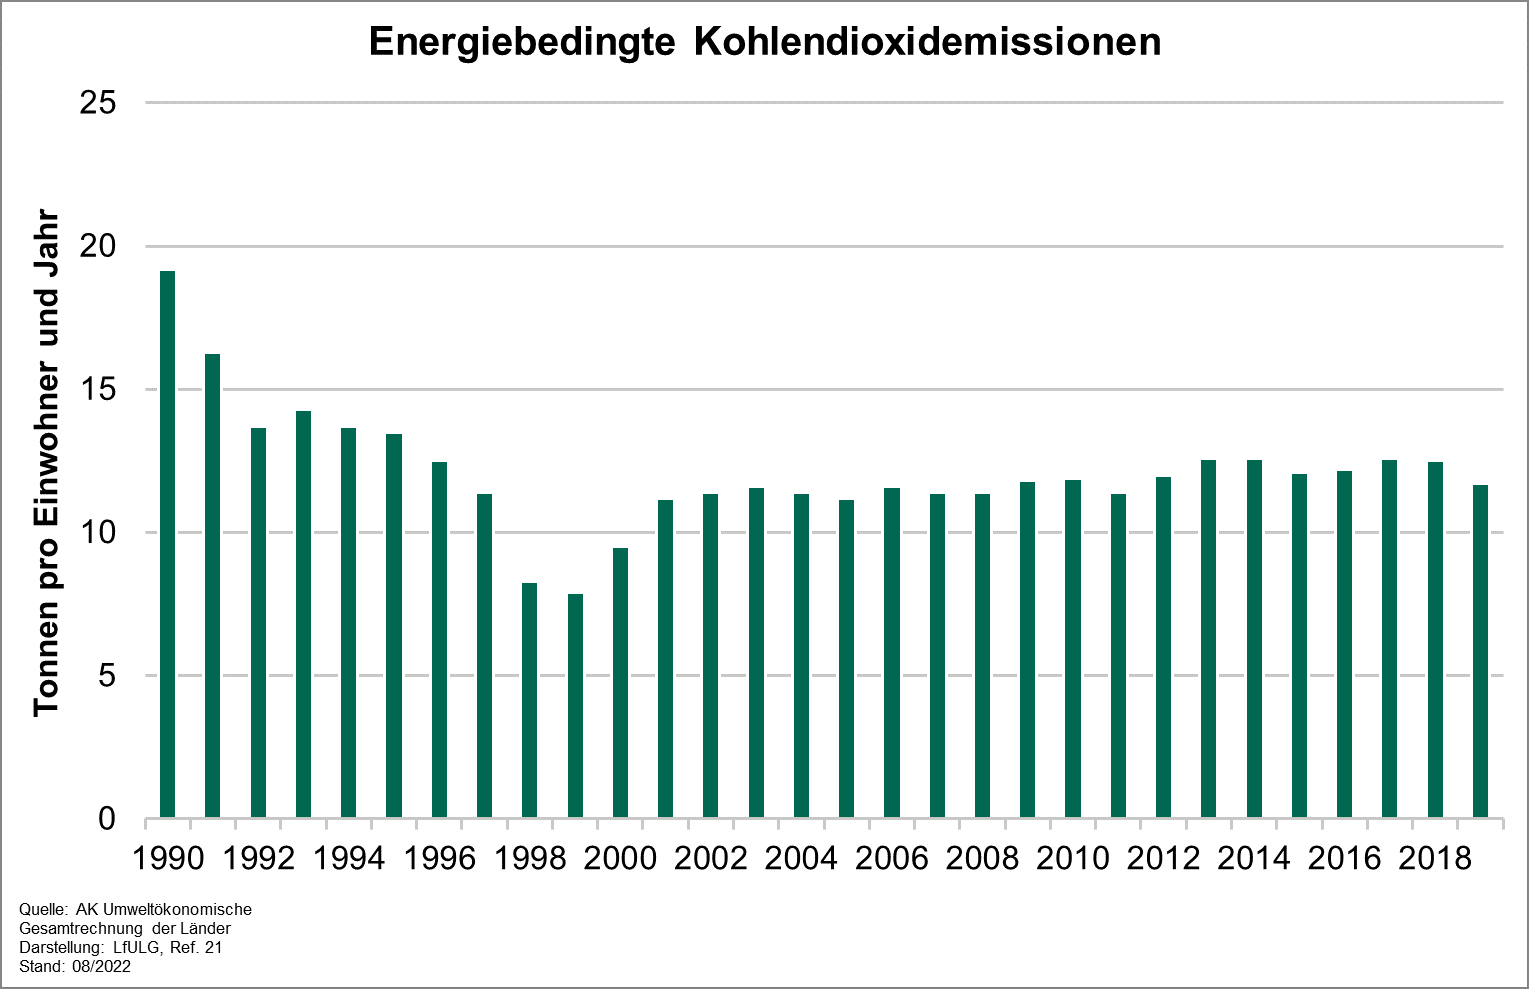 Die Grafik zeigt die Entwicklung des Indikators energiebedingte Kohlendioxidemissionen von 1990 bis 2019. Von 1990 bis 1999 fielen die Emissionen rapide von 19,2 auf 7,9 Tonnen pro Einwohner und Jahr. 